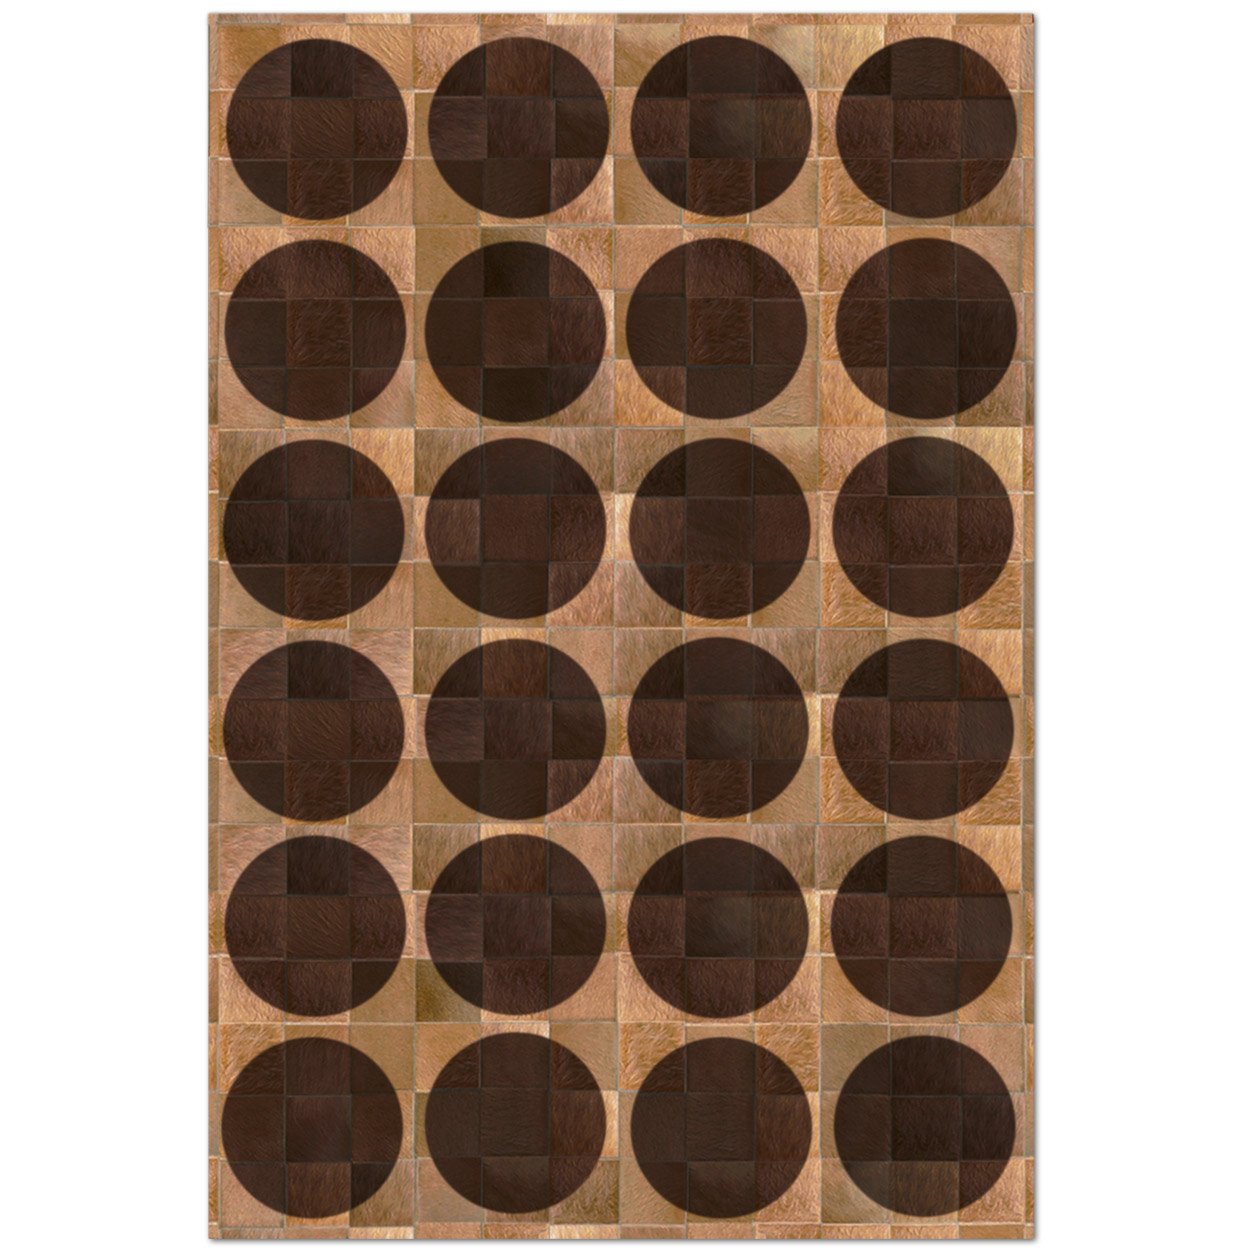 Custom Cowhide Patchwork Rug - 8in Squares - Circles Dark Brown on Brown